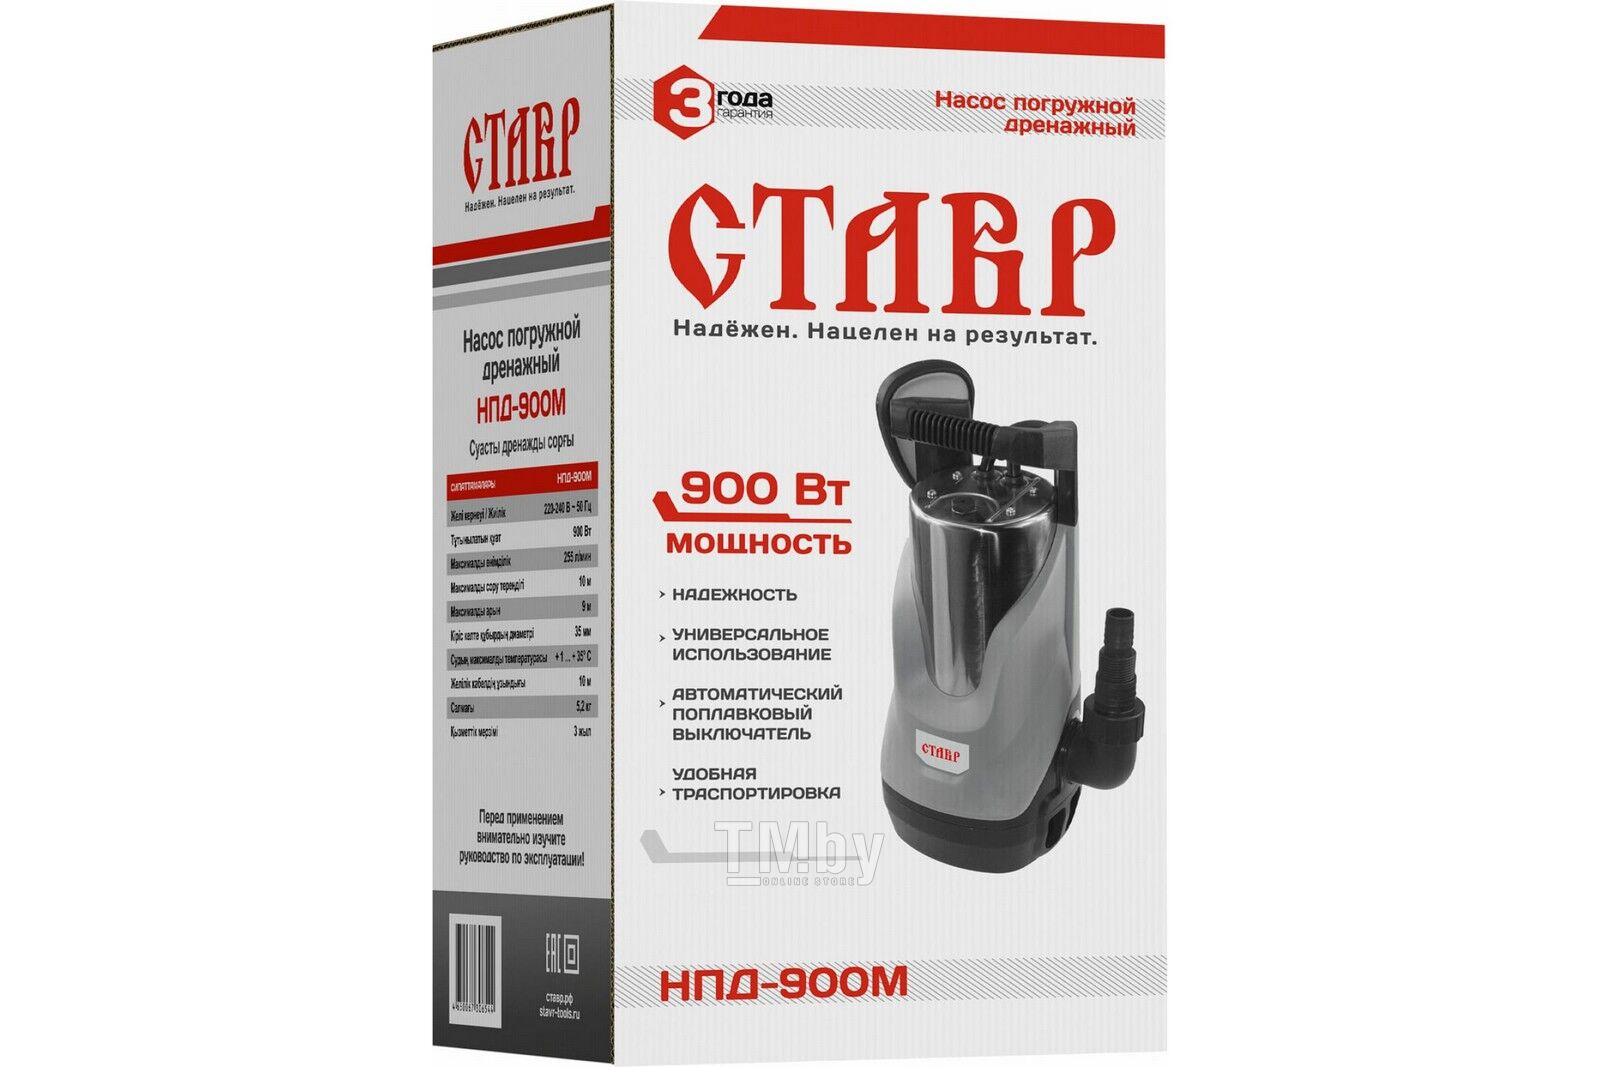 Купить дренажный насос Ставр НПД-900М в Минске — TM.by